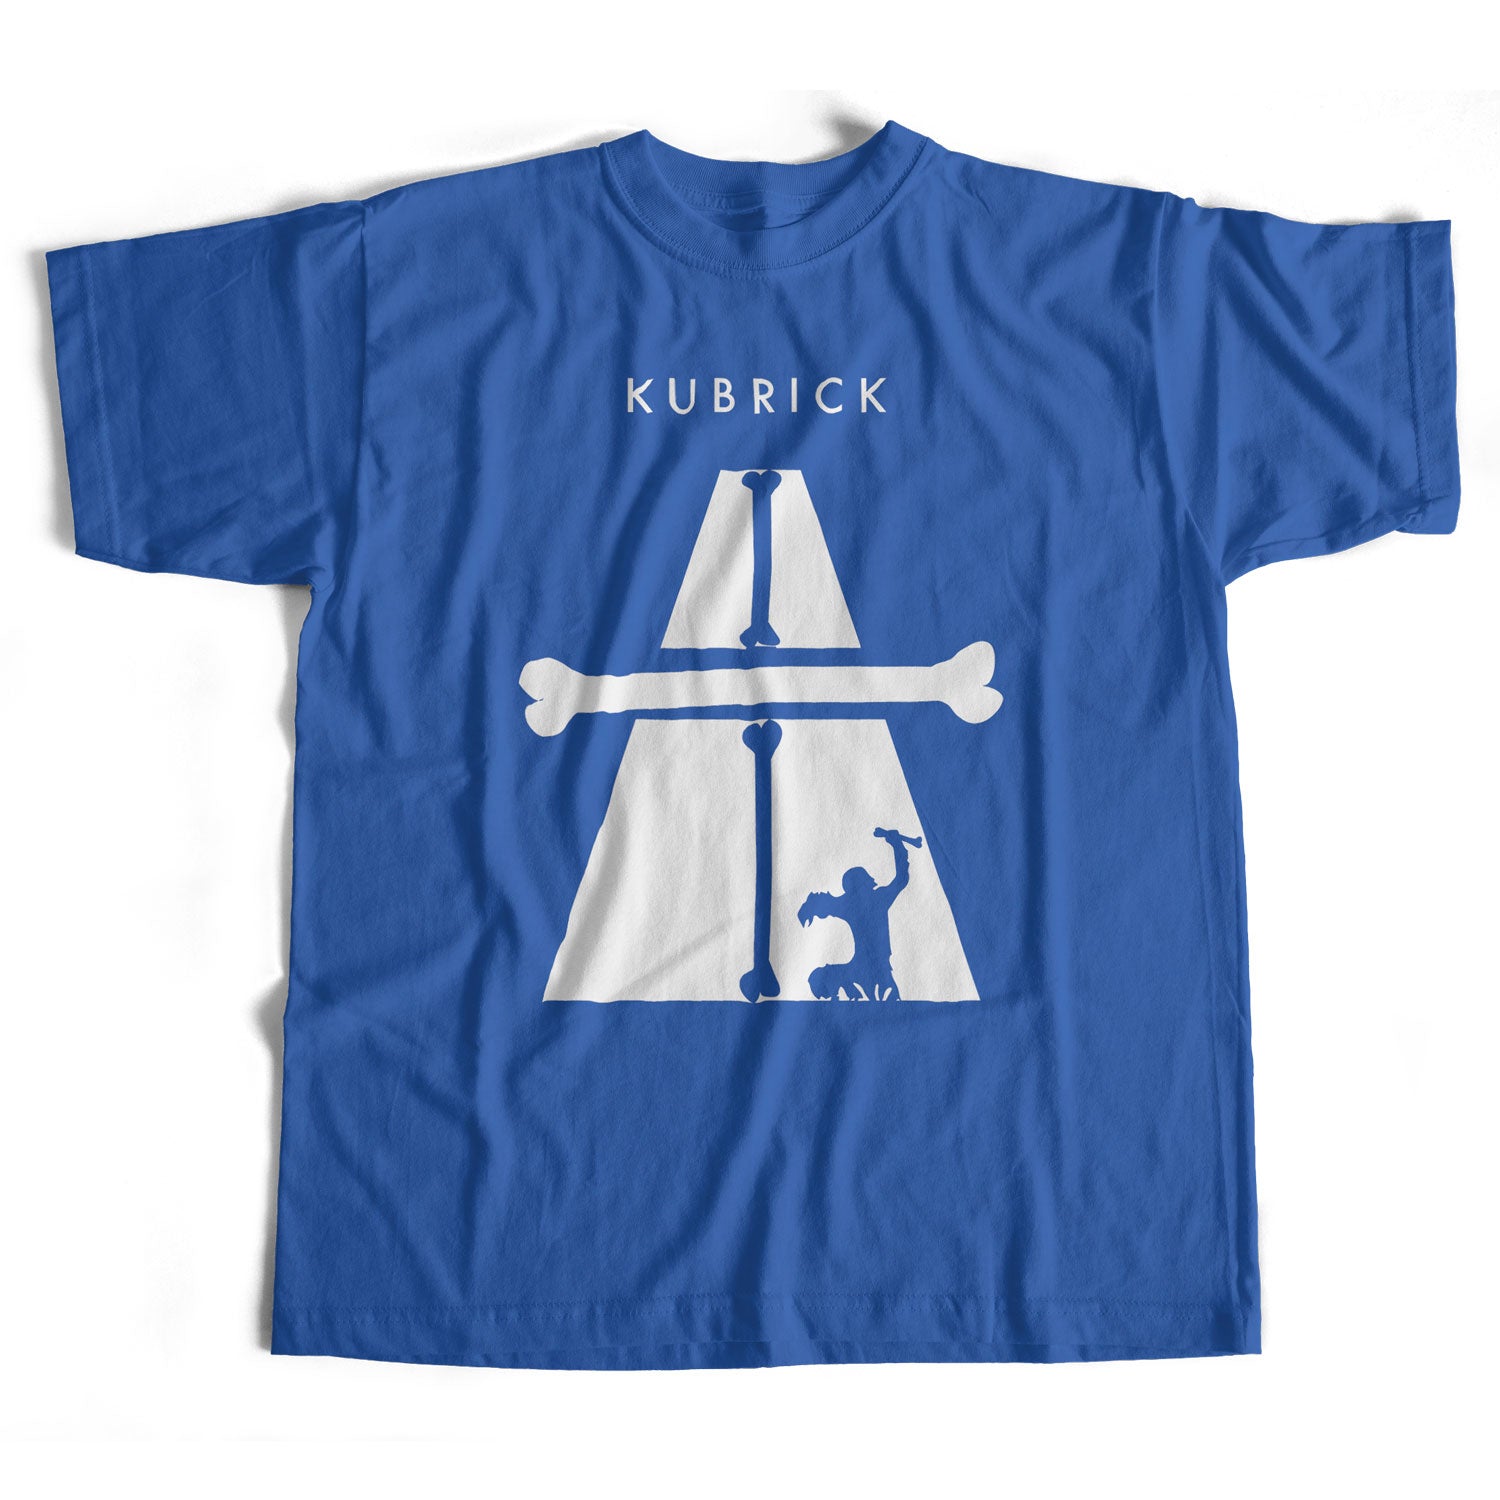 Kubrick Autobahn Monolith T Shirt